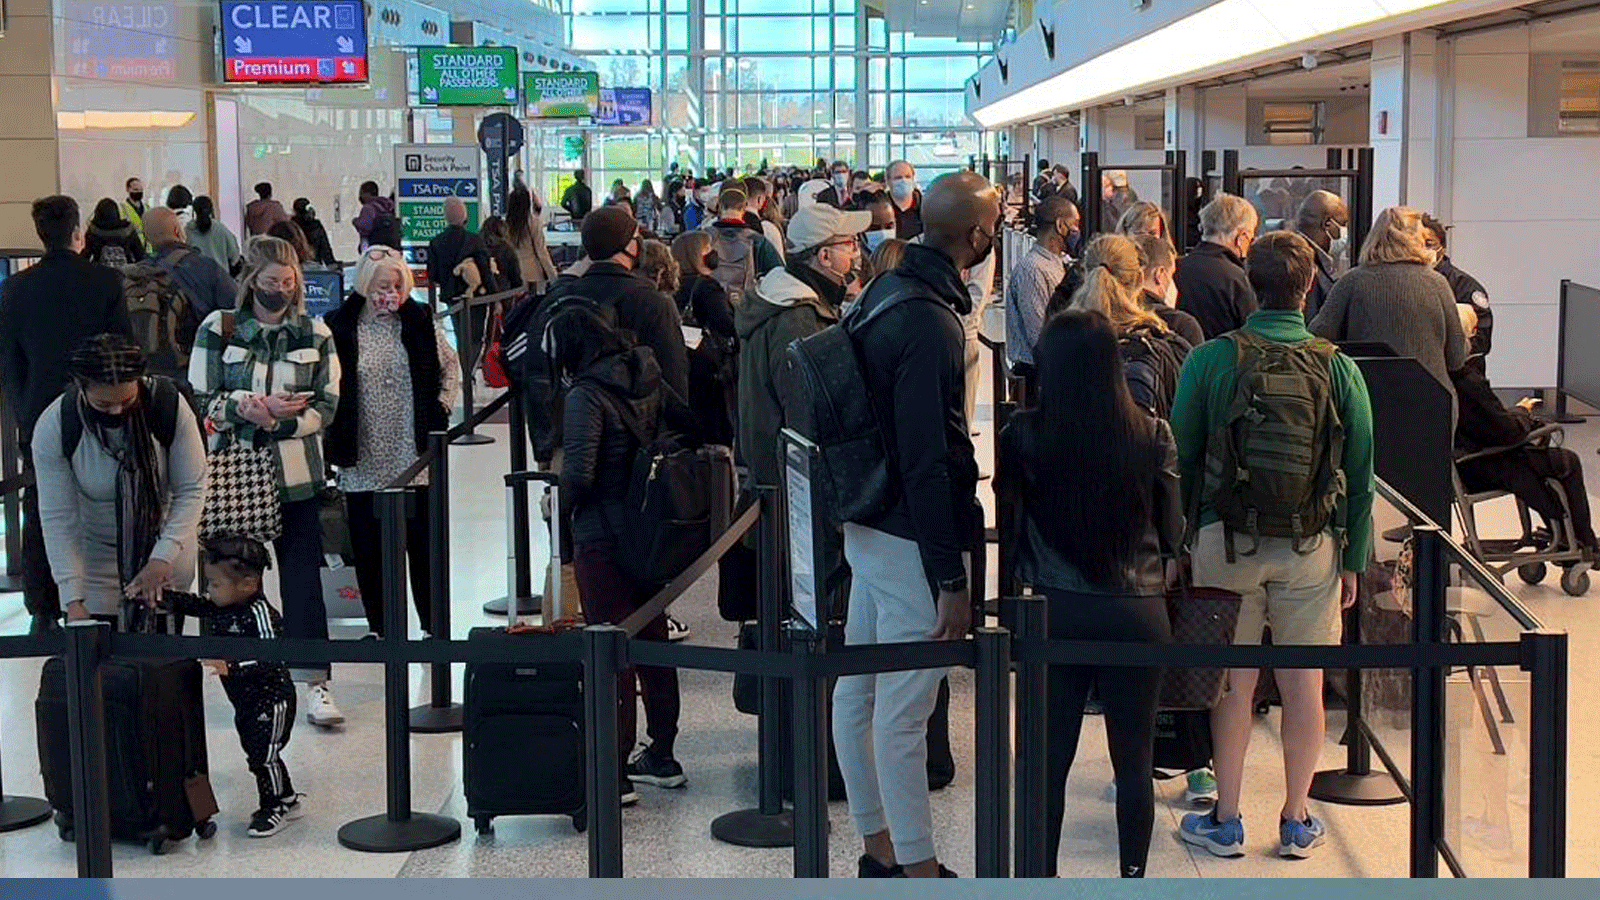 الناس يصطفون في أحد مطارات الولايات المتحدة حيث يتعين على جميع المسافرين الذين يصلون إلى الولايات المتحدة إظهار اختبار COVID-19 سلبي. ويجب إجراء الاختبار في غضون يومٍ واحد قبل المغادرة.